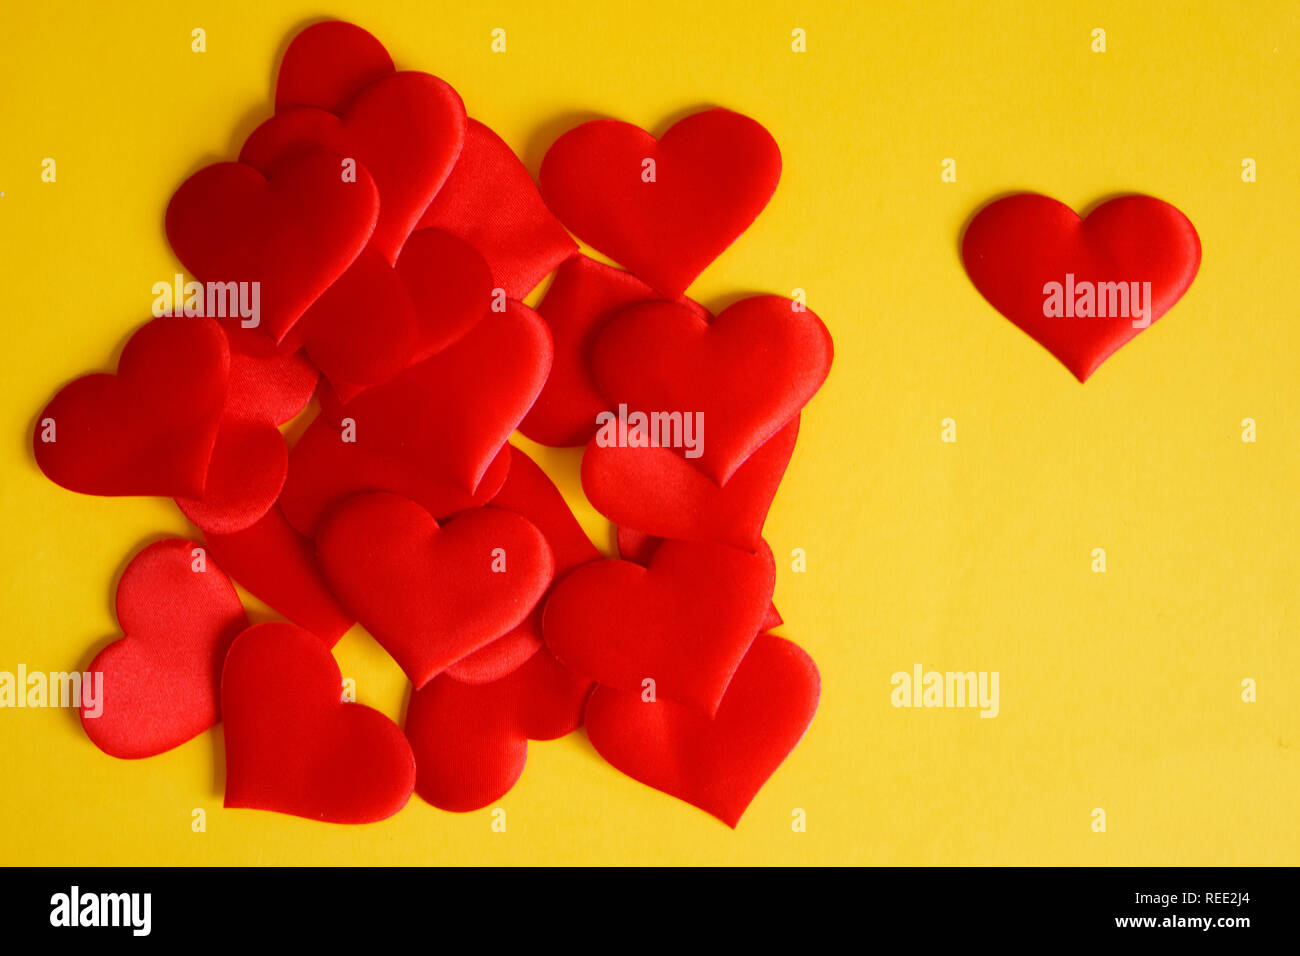 Eine Menge Satin rot Herzen auf einem gelben Oberfläche. St Valentines Tag. Herzlichen Glückwunsch zum Valentines Tag. Liebe und Einsamkeit. Stockfoto